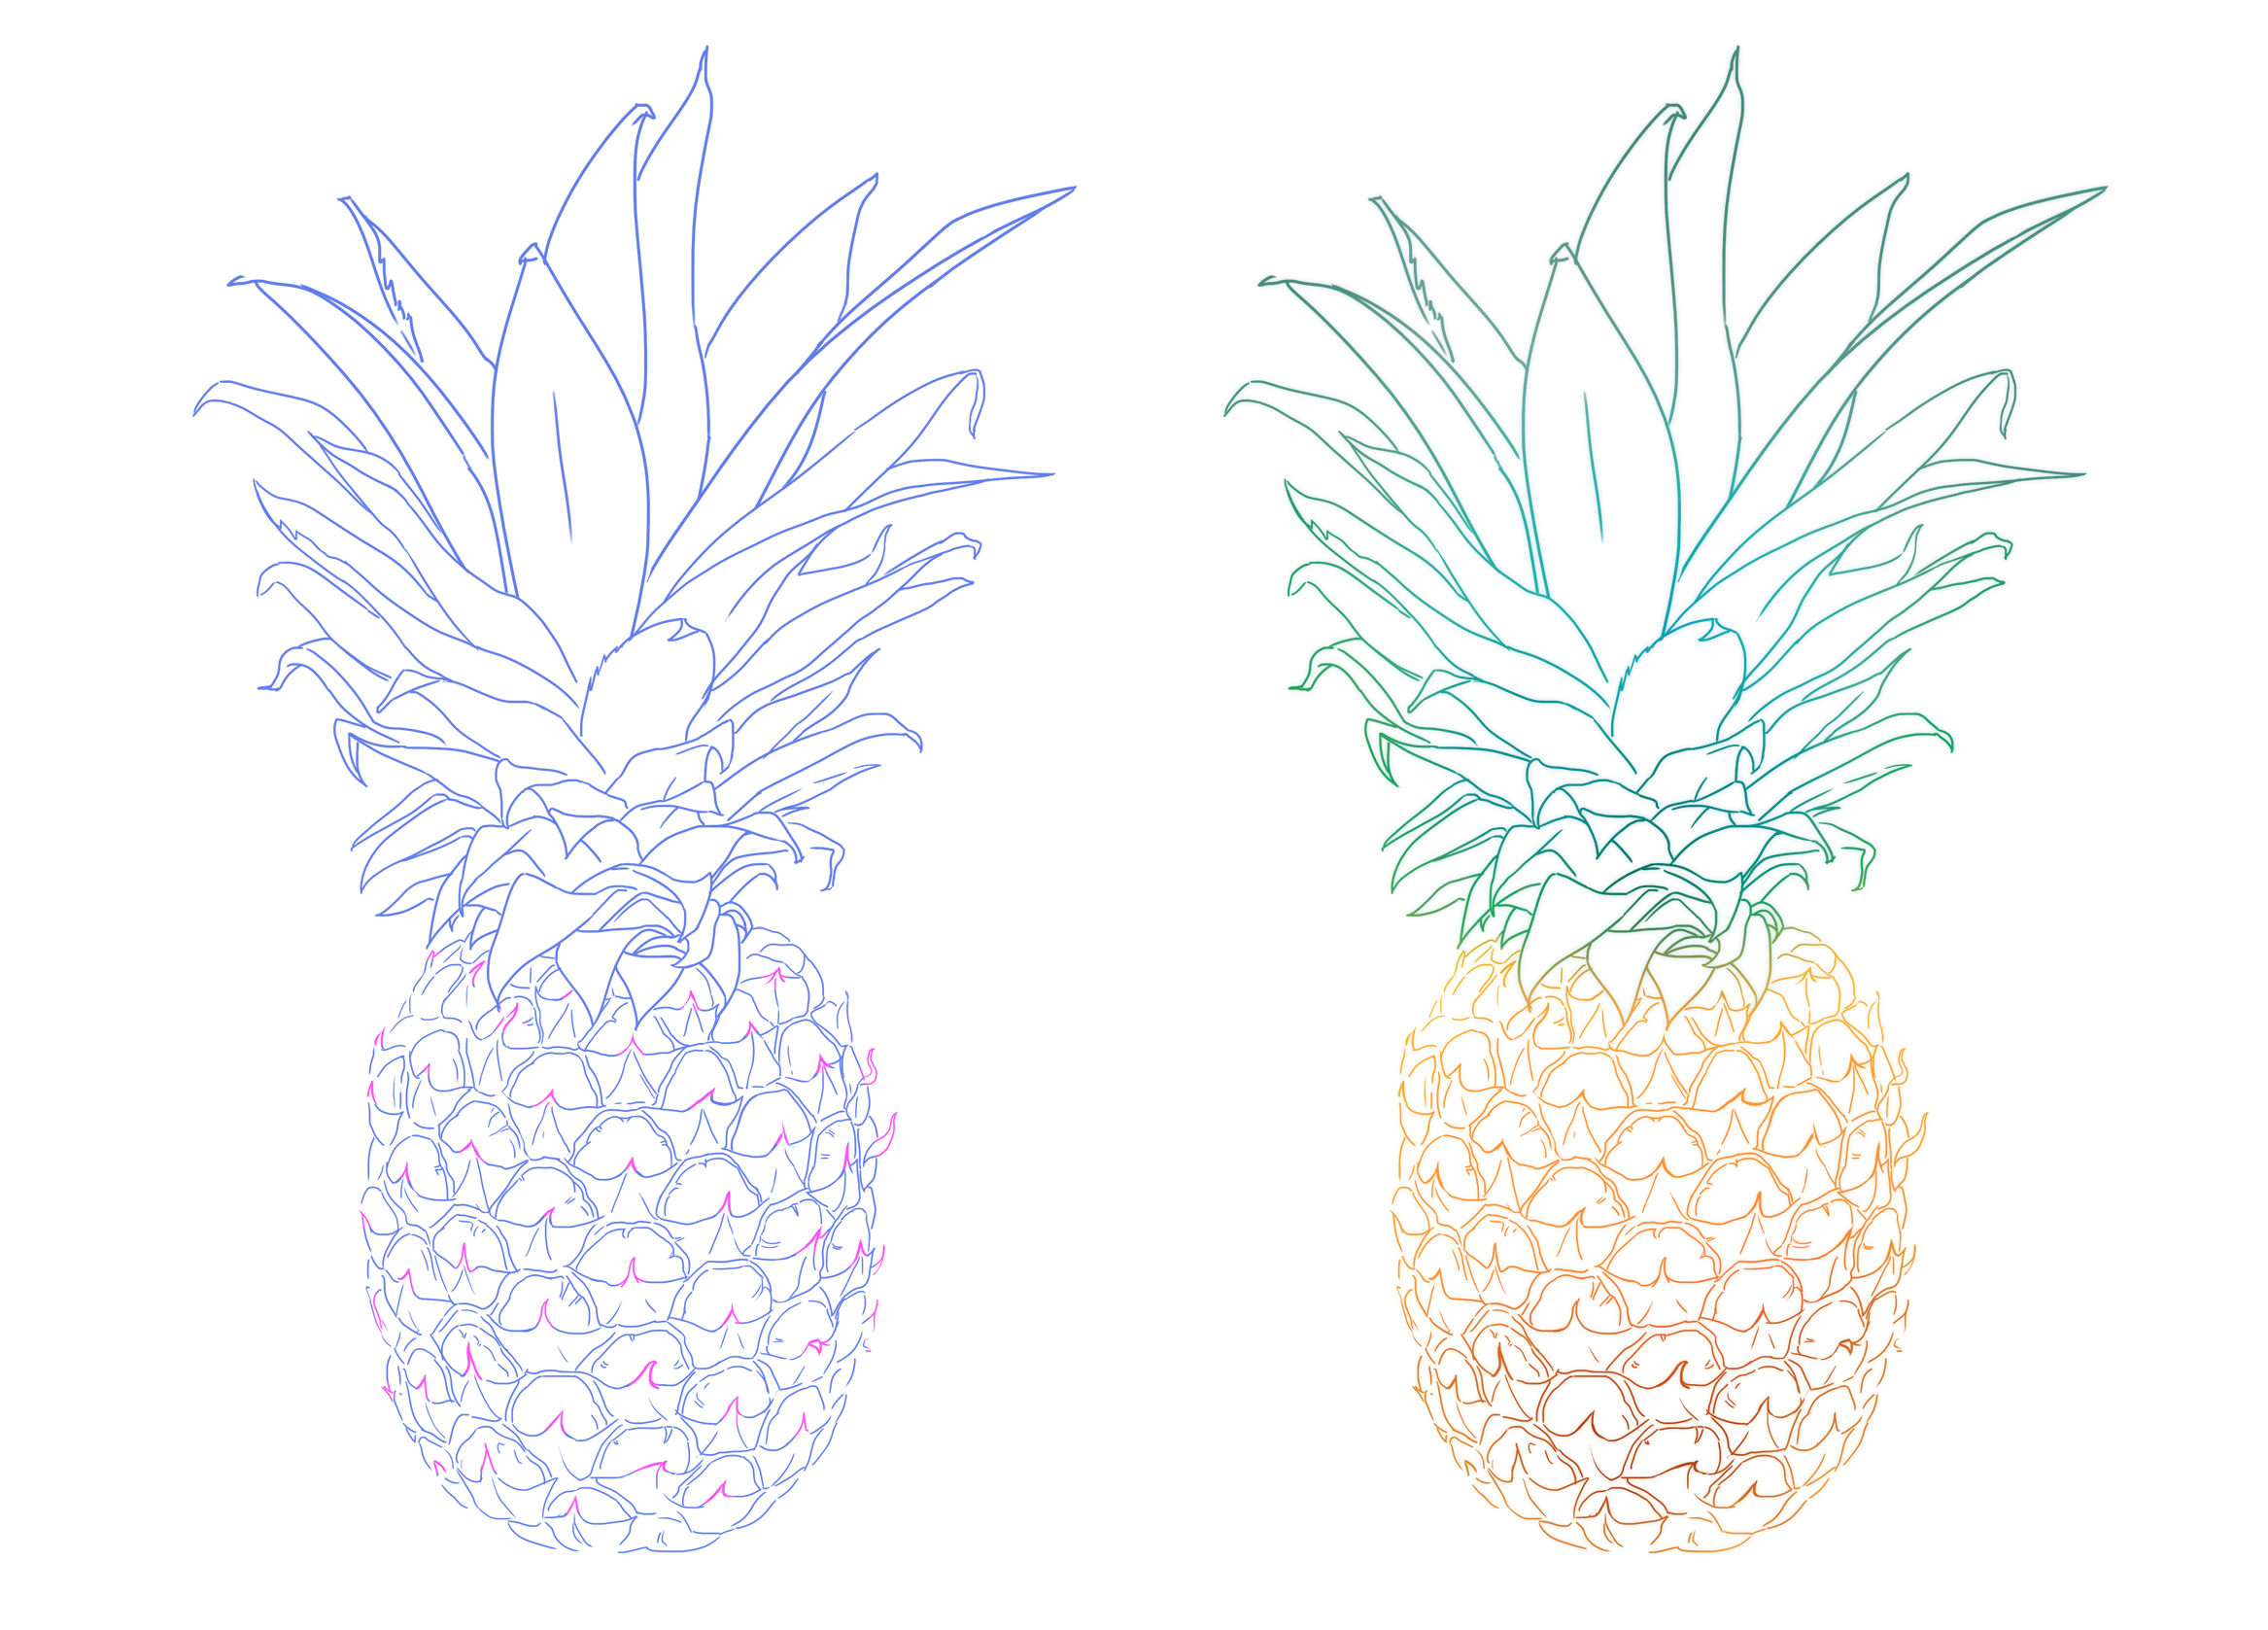 dessin de fruit : ananas